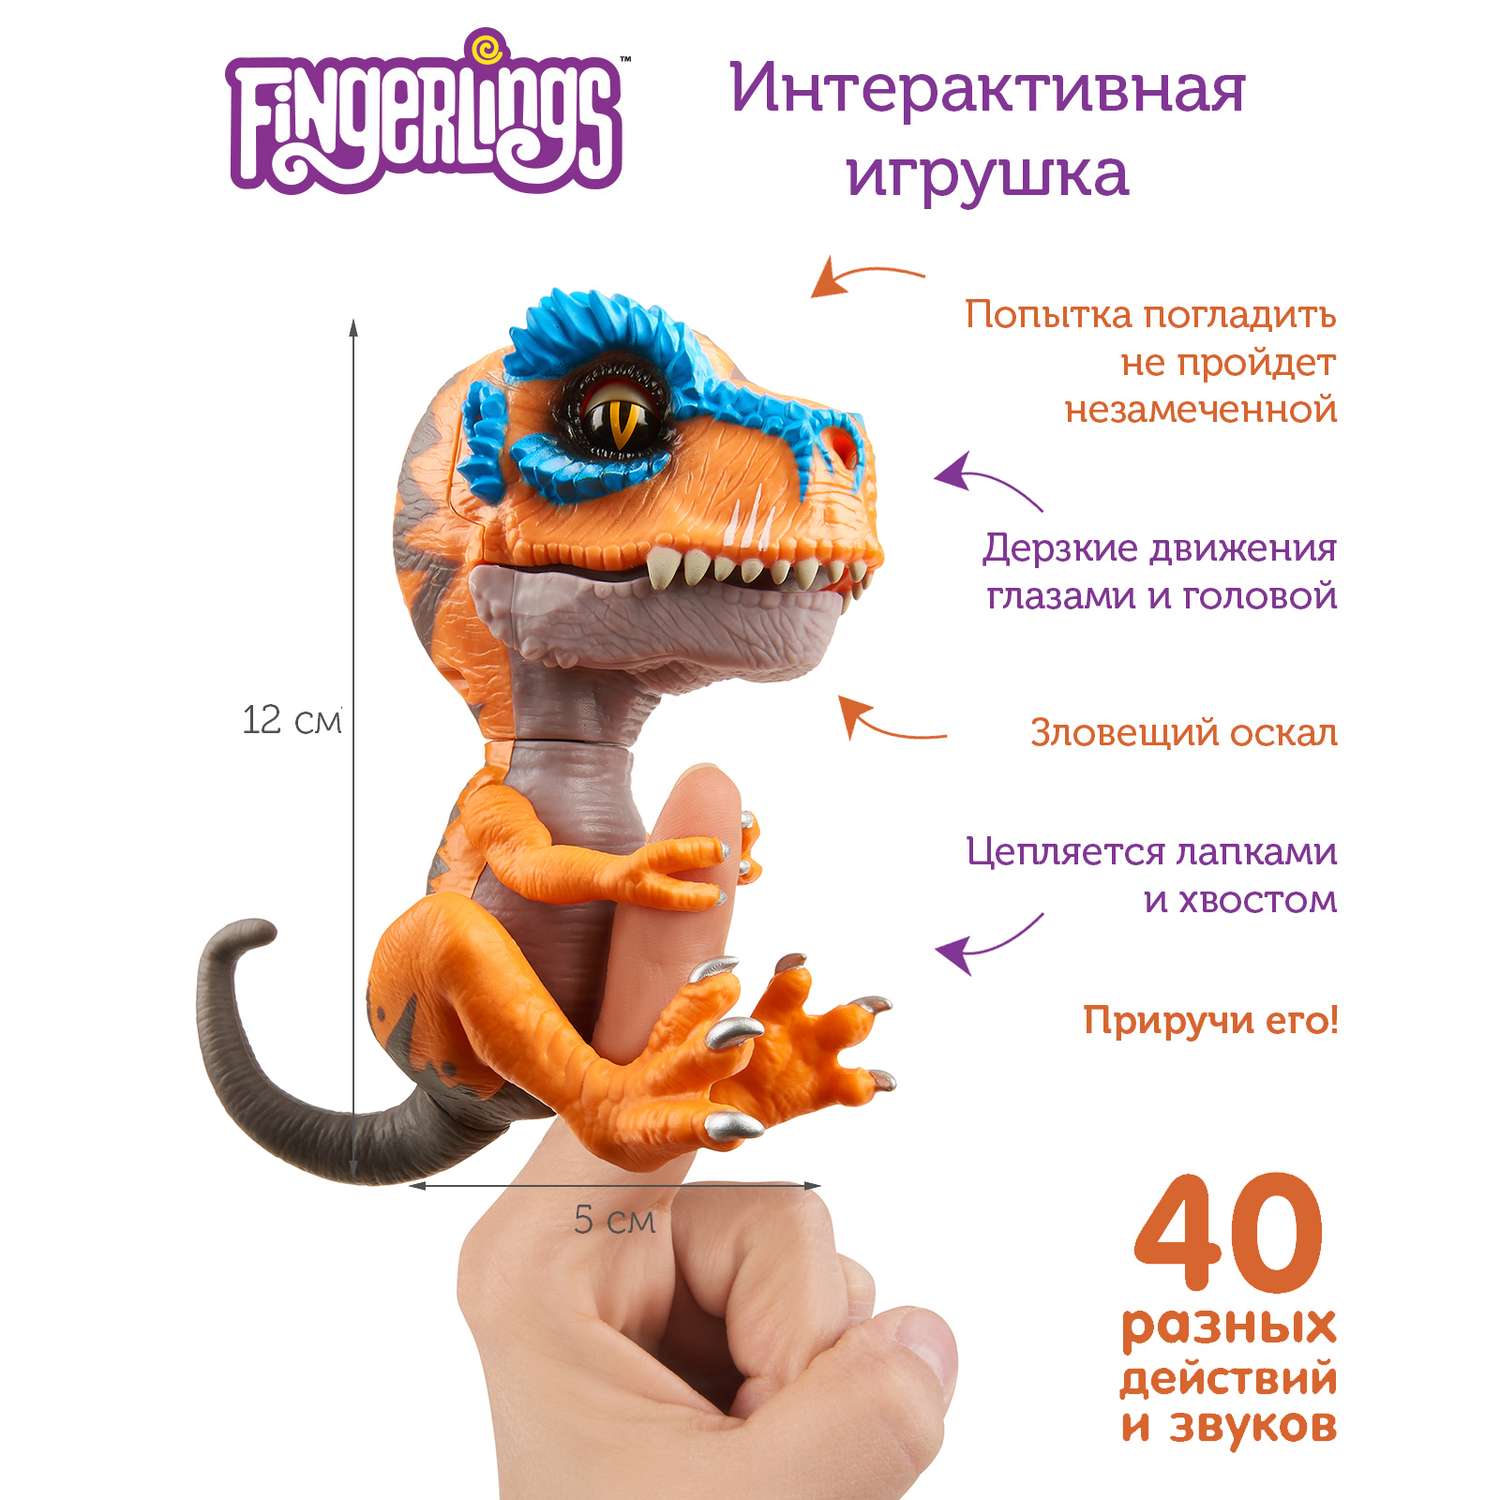 Интерактивная игрушка Fingerlings Динозавр Скретч 3787 - фото 2